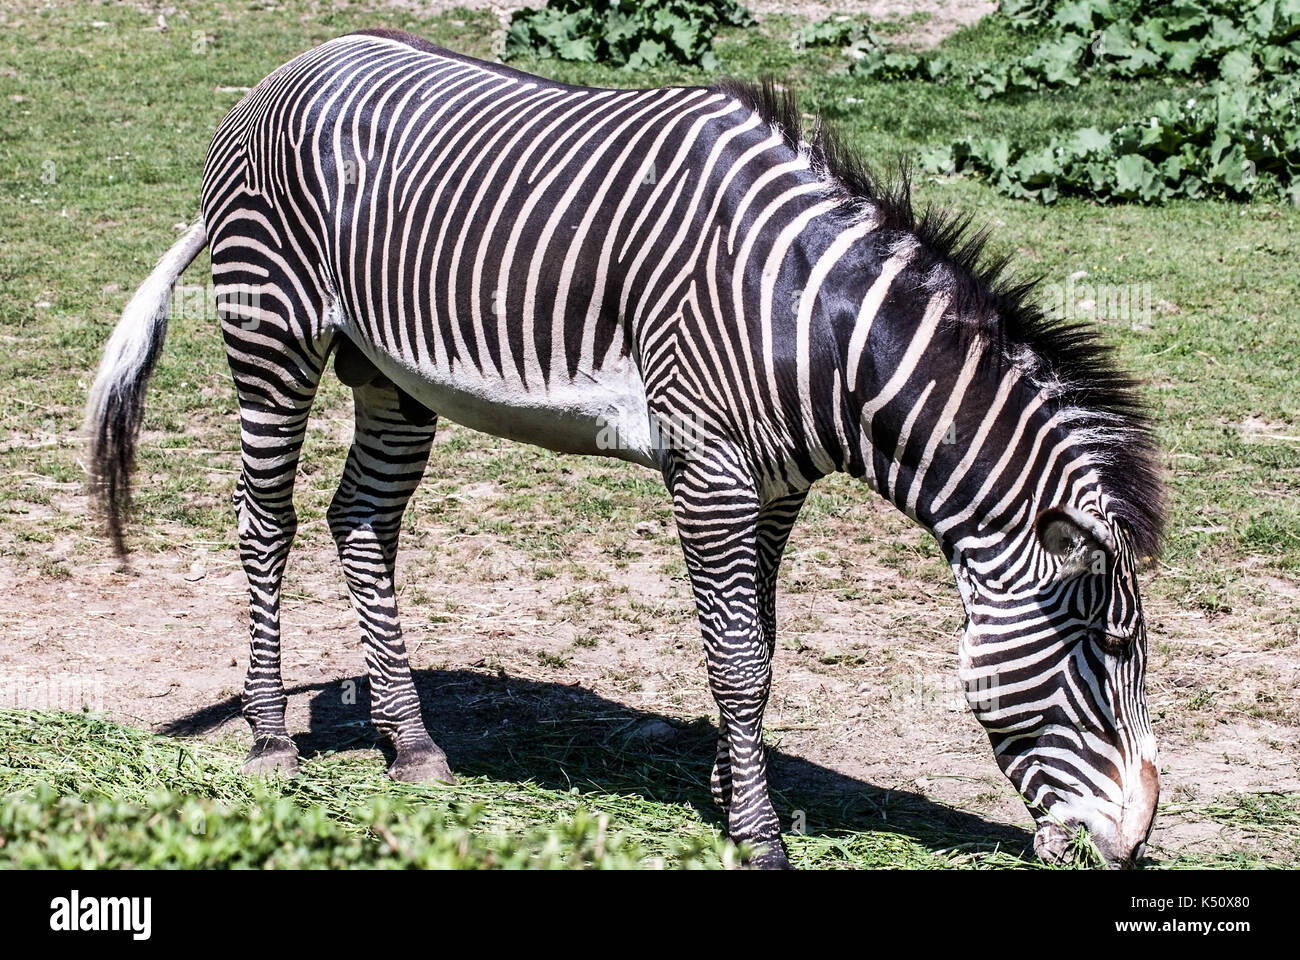 Grévys Zebra (kaiserliches Zebra) Tiere, die sich auf Gras ernähren Stockfoto